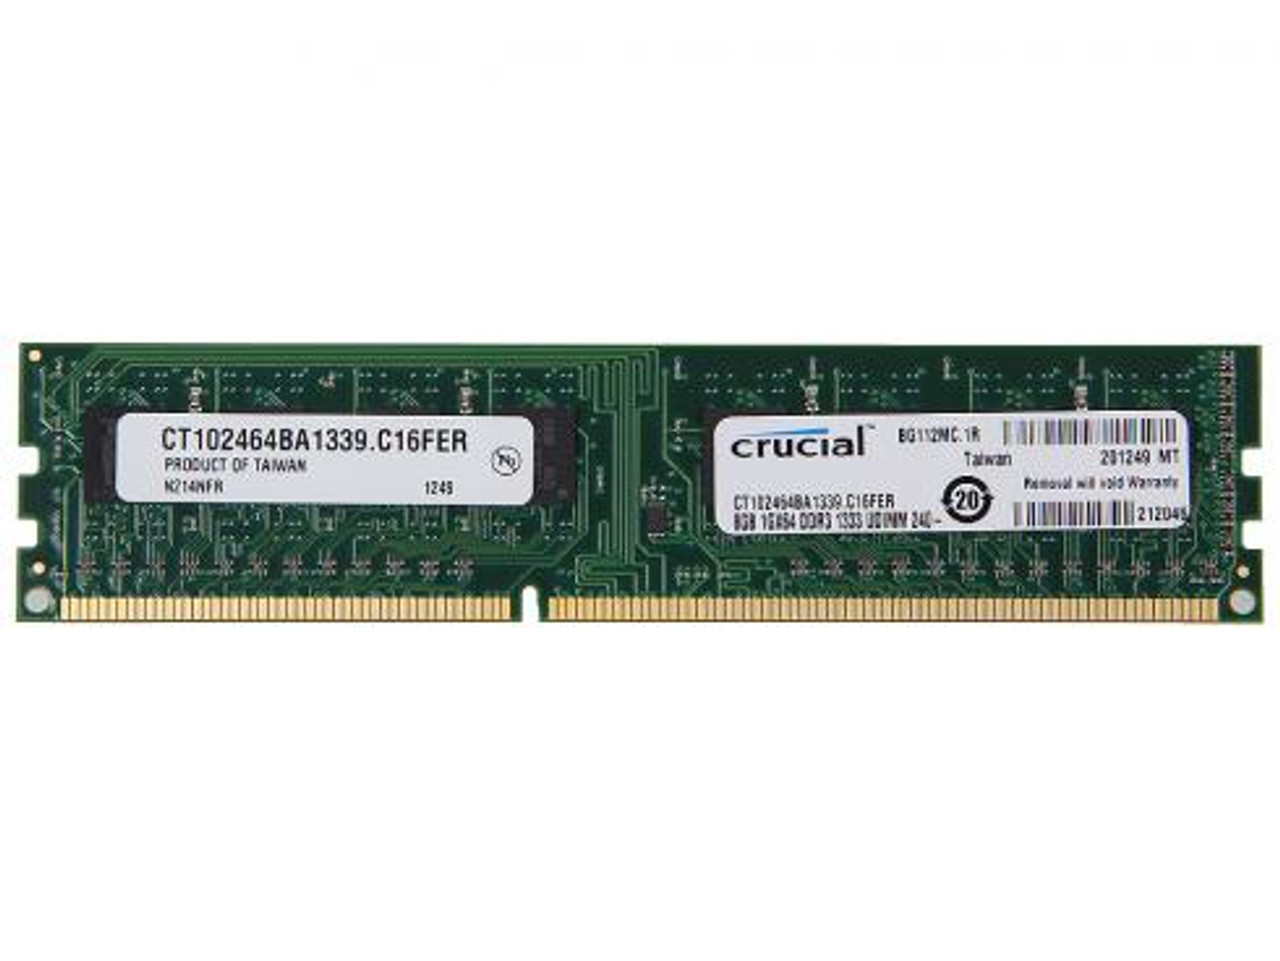 CT102464BA1339 8GB DDR3 1333MHz Desktop Memory